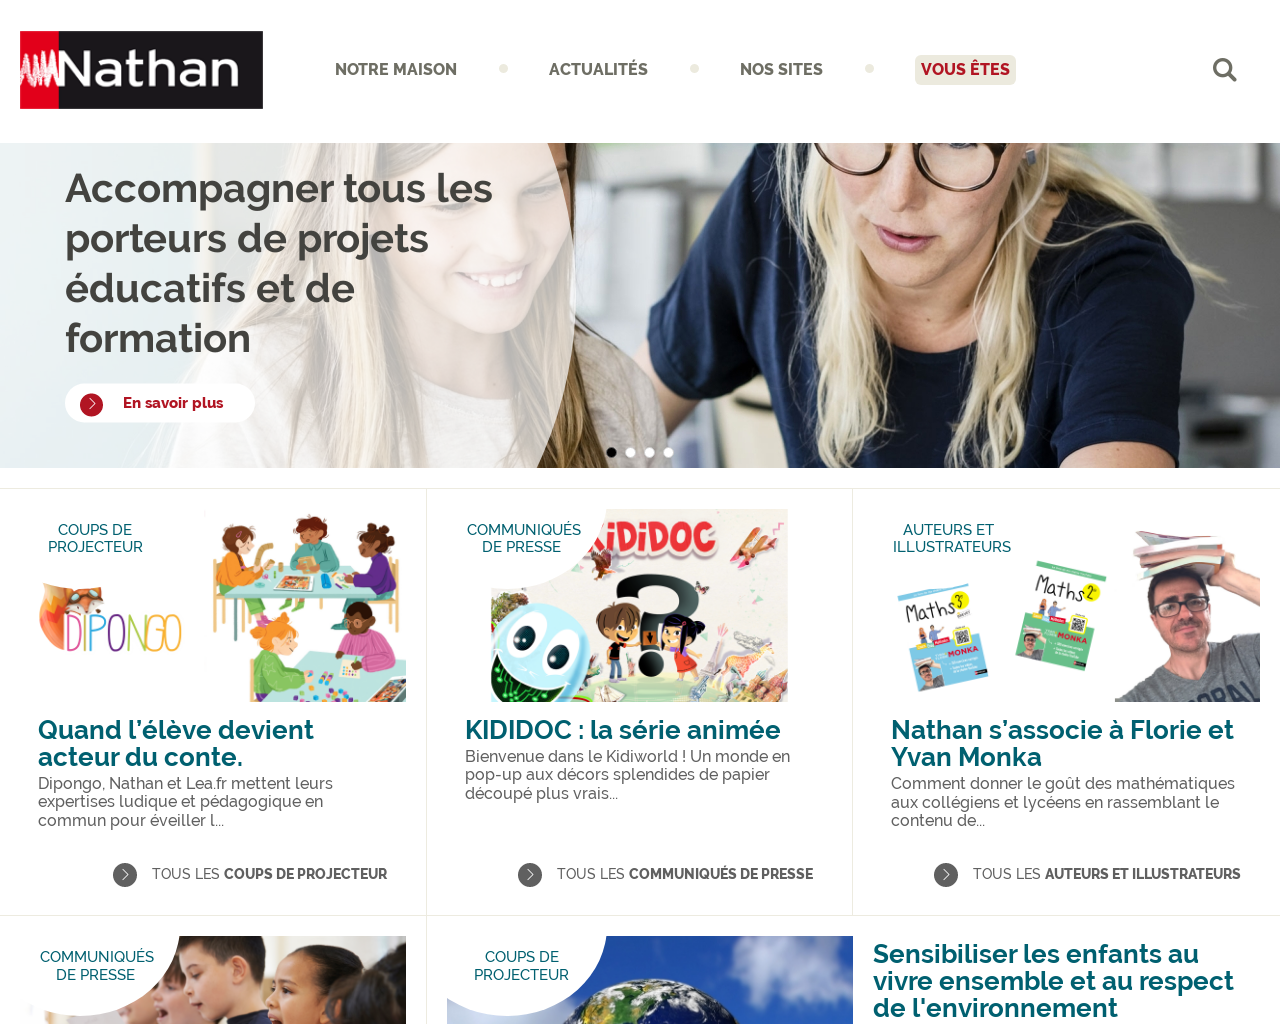 www.nathan.fr